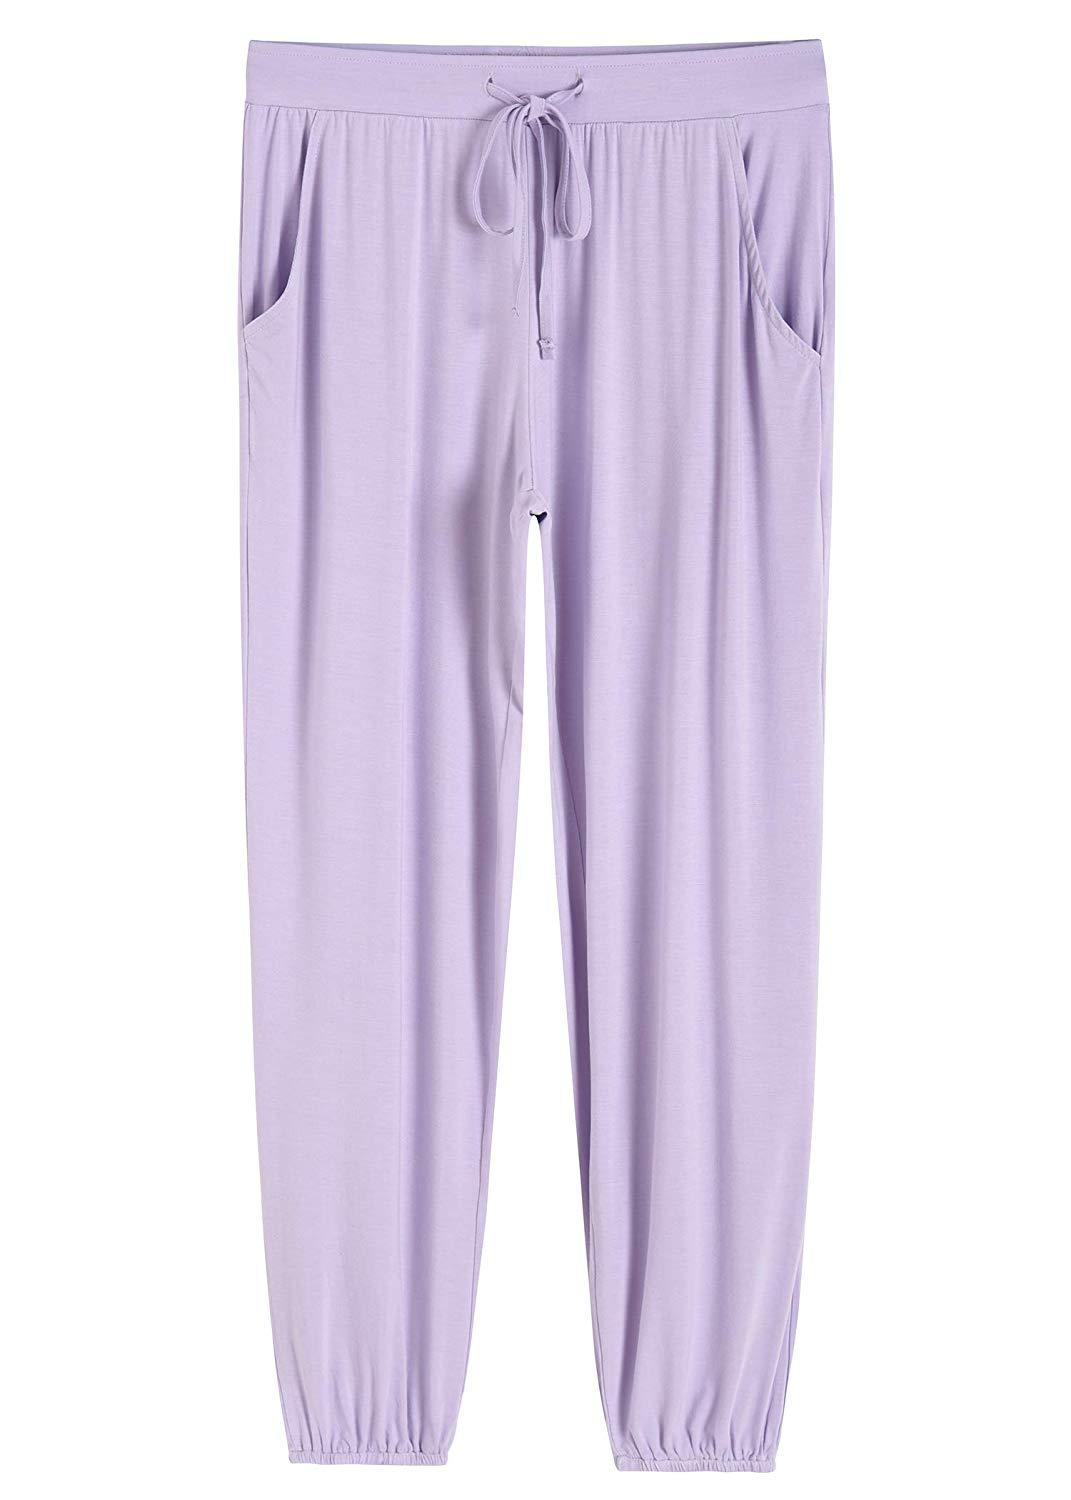 Women's Pajamas Pants Lounge Bottoms with Pockets - Latuza